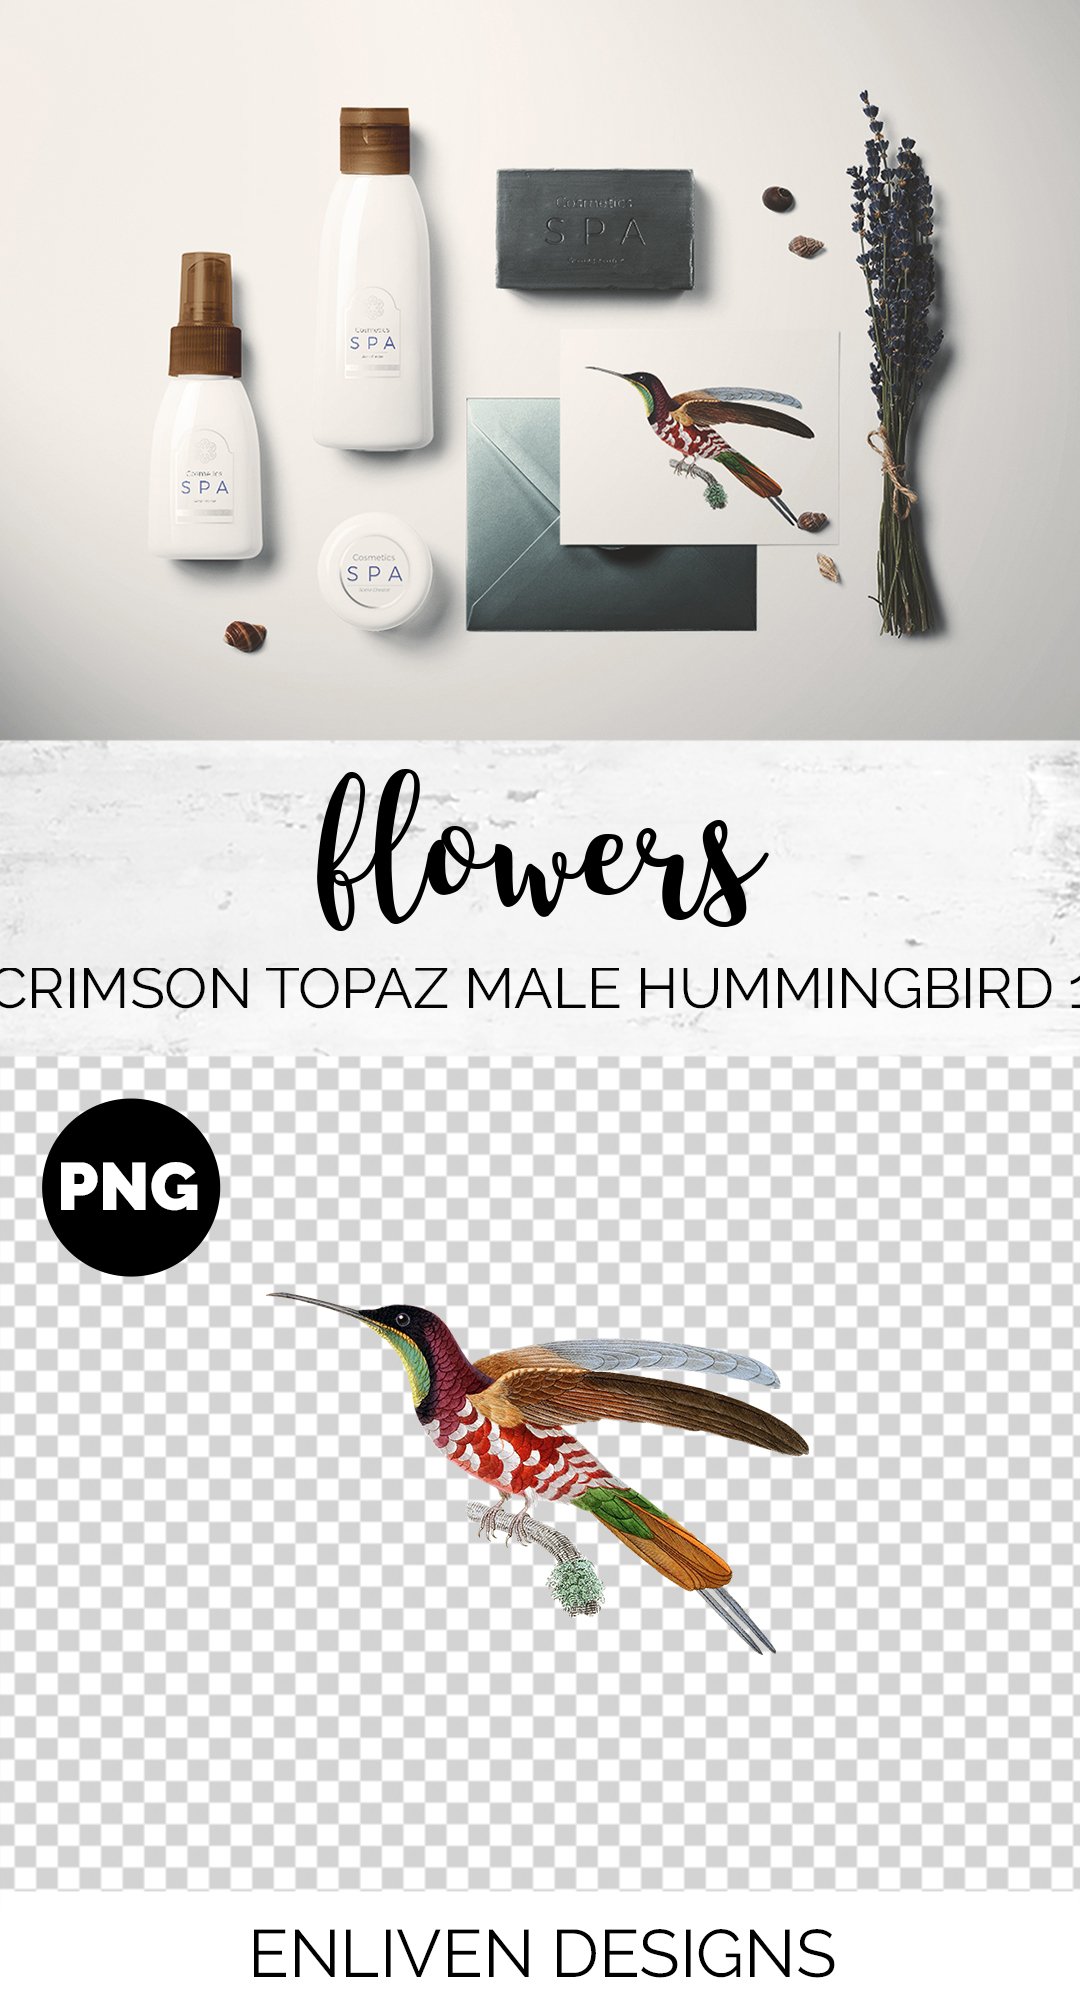 e01v01m 84561 crimson topaz male hummingbird 1 b 918